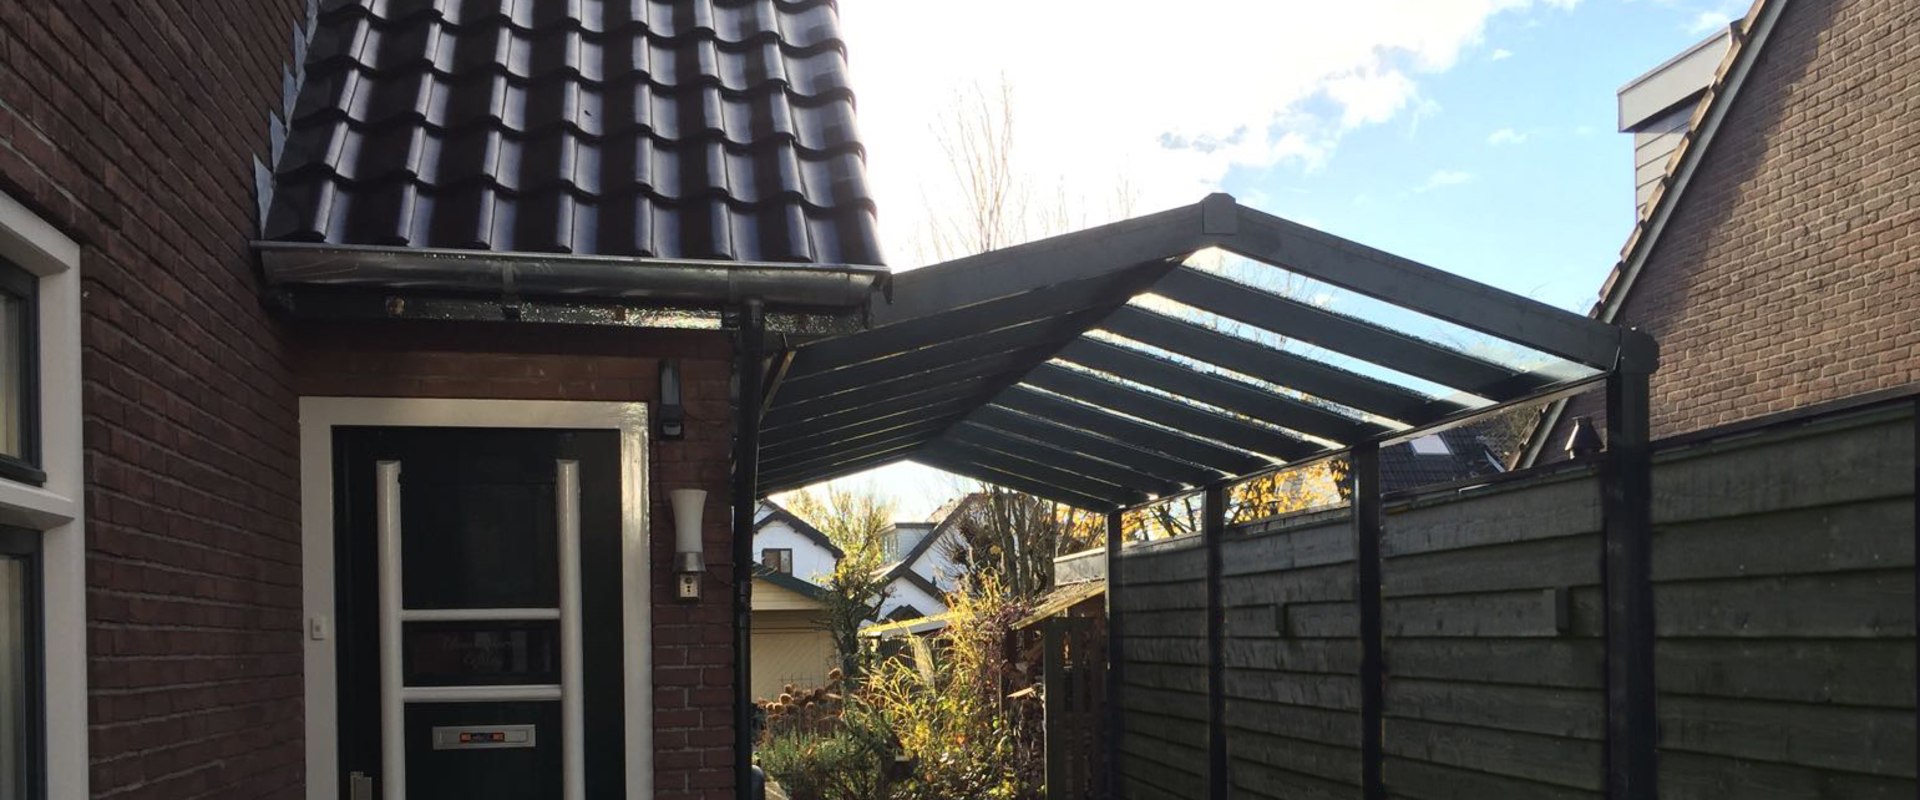 Wat zijn de voordelen van een aluminium dak?